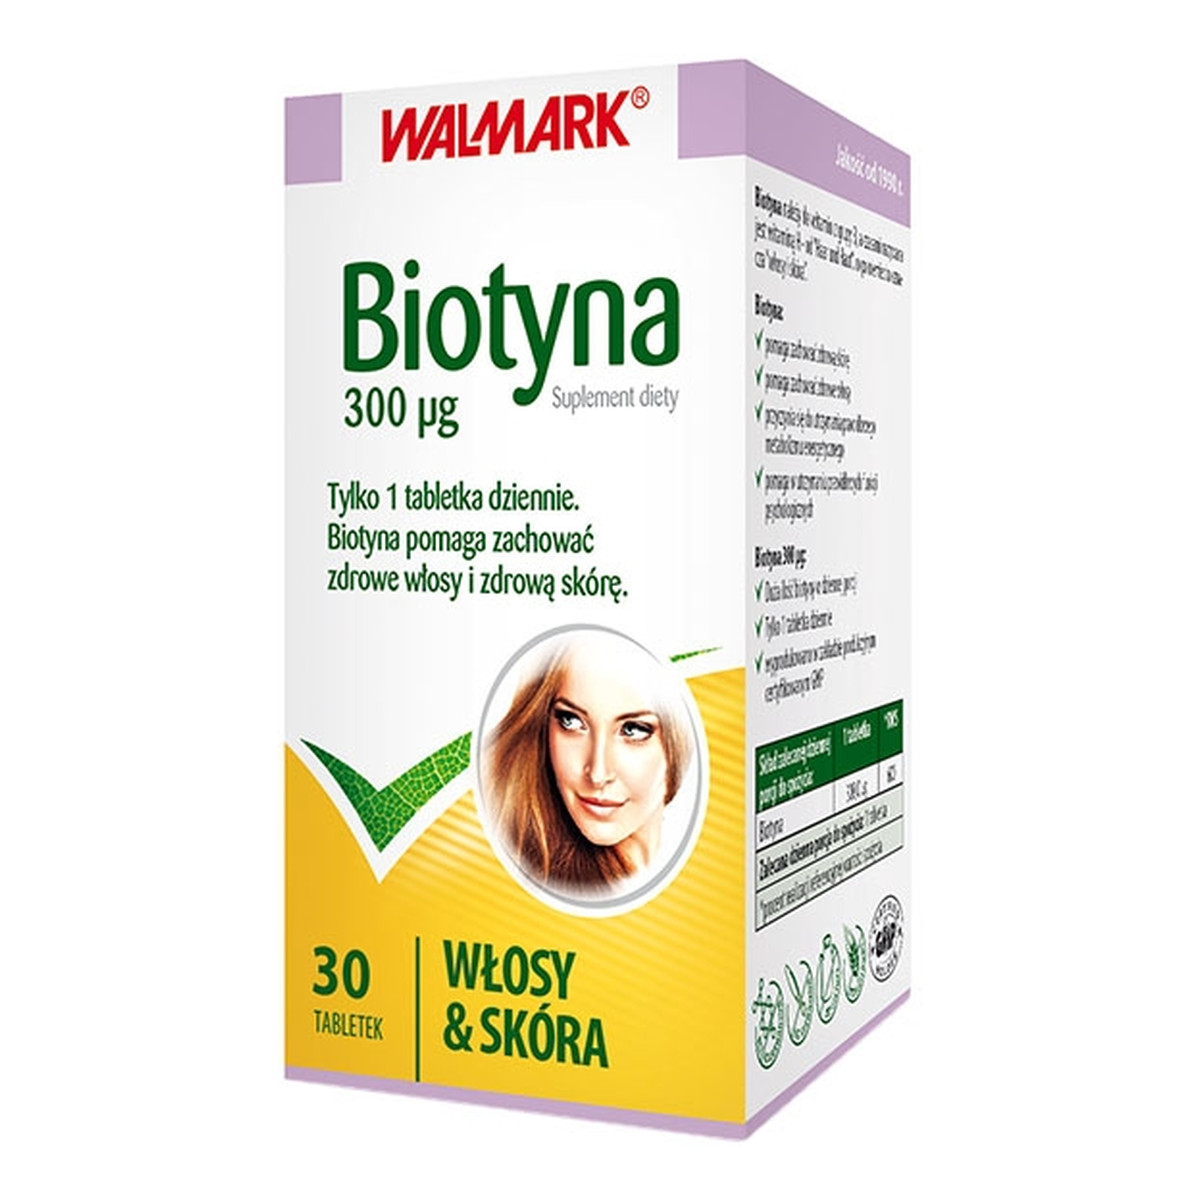 Walmark Biotyna 300mcg suplement diety 30 Tabletek